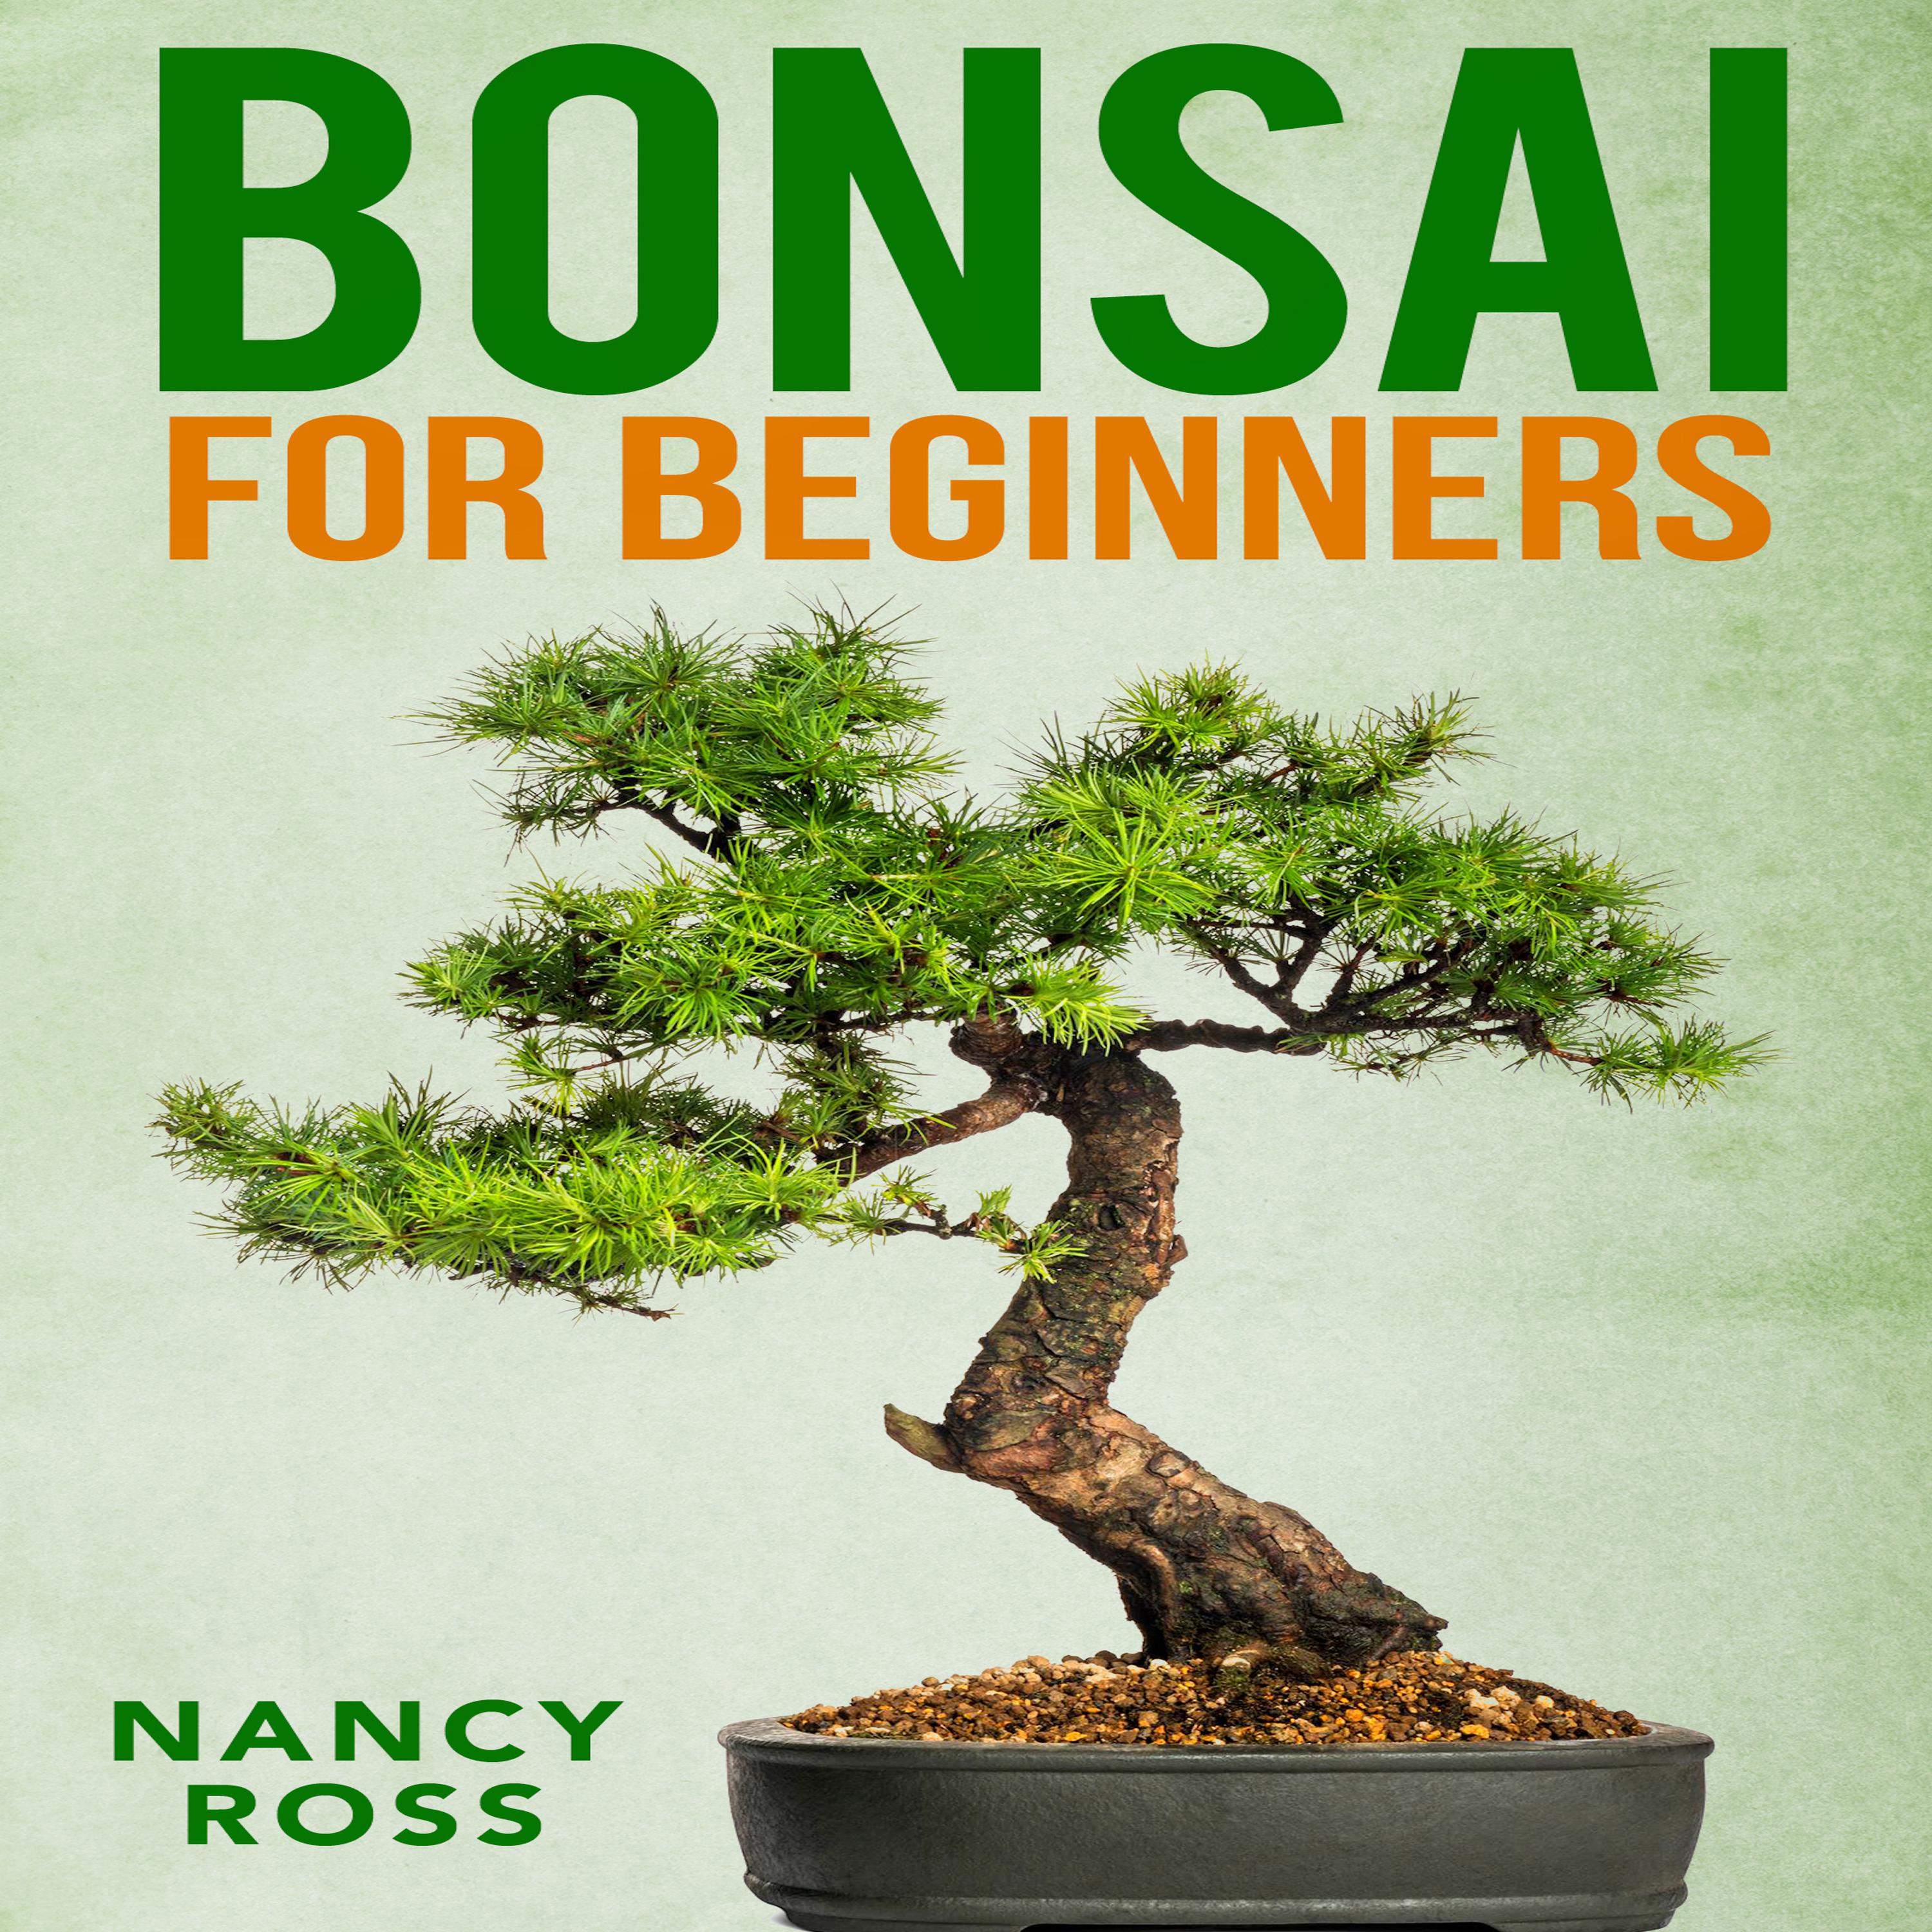 Bonsai For Beginners Audiobook Listen Instantly